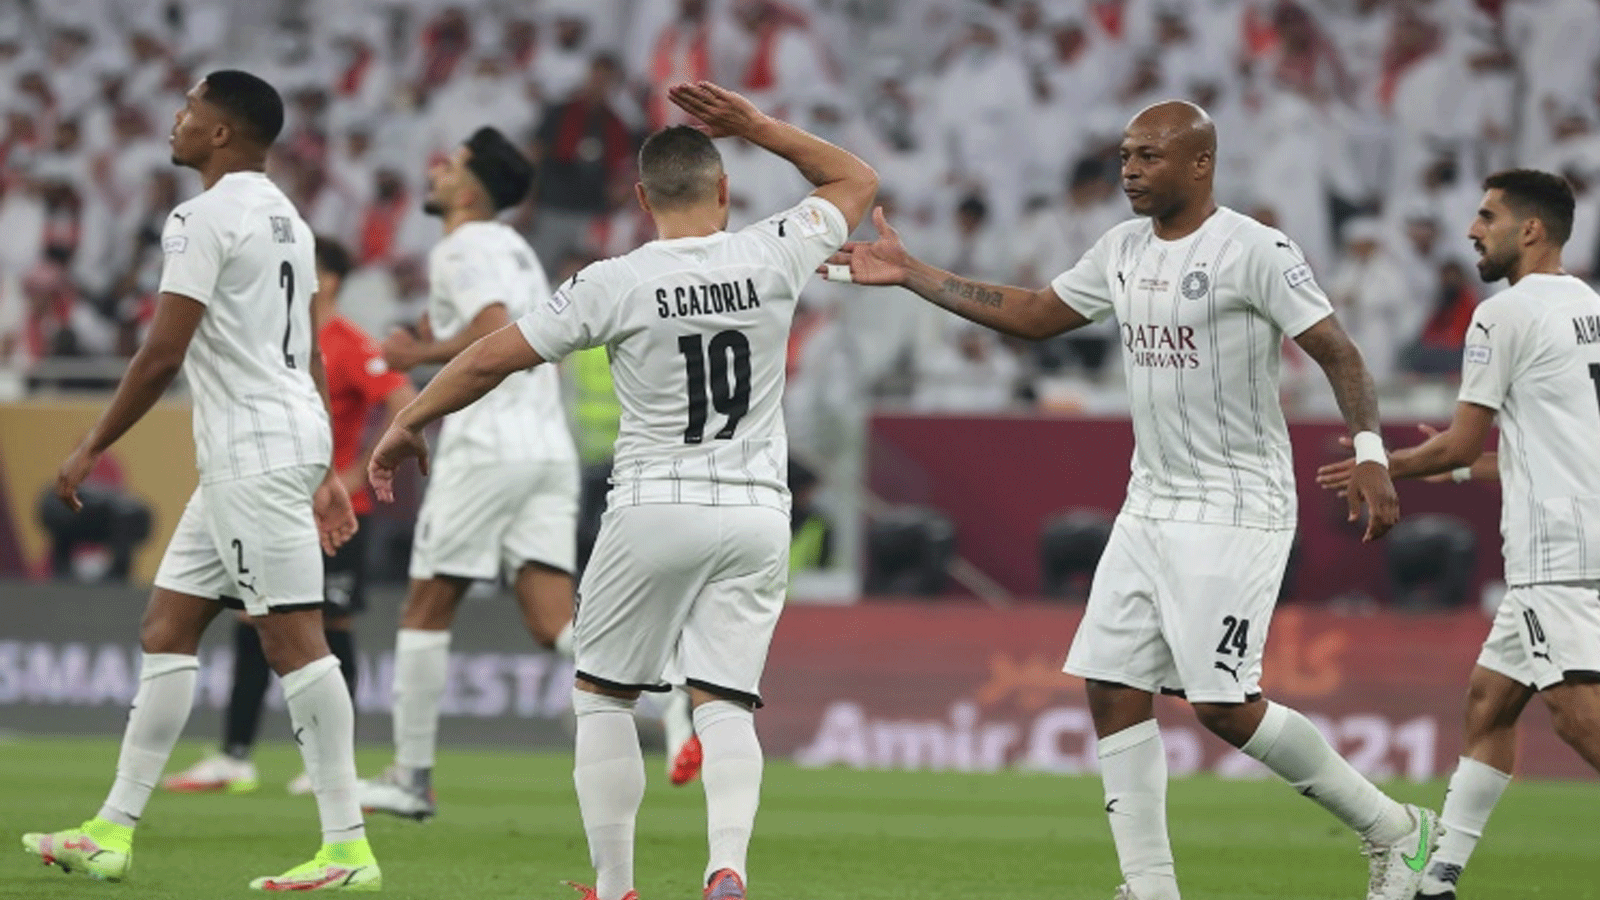 السد لم يخسر منذ 49 مباراة في الدوري القطري لكرة القدم